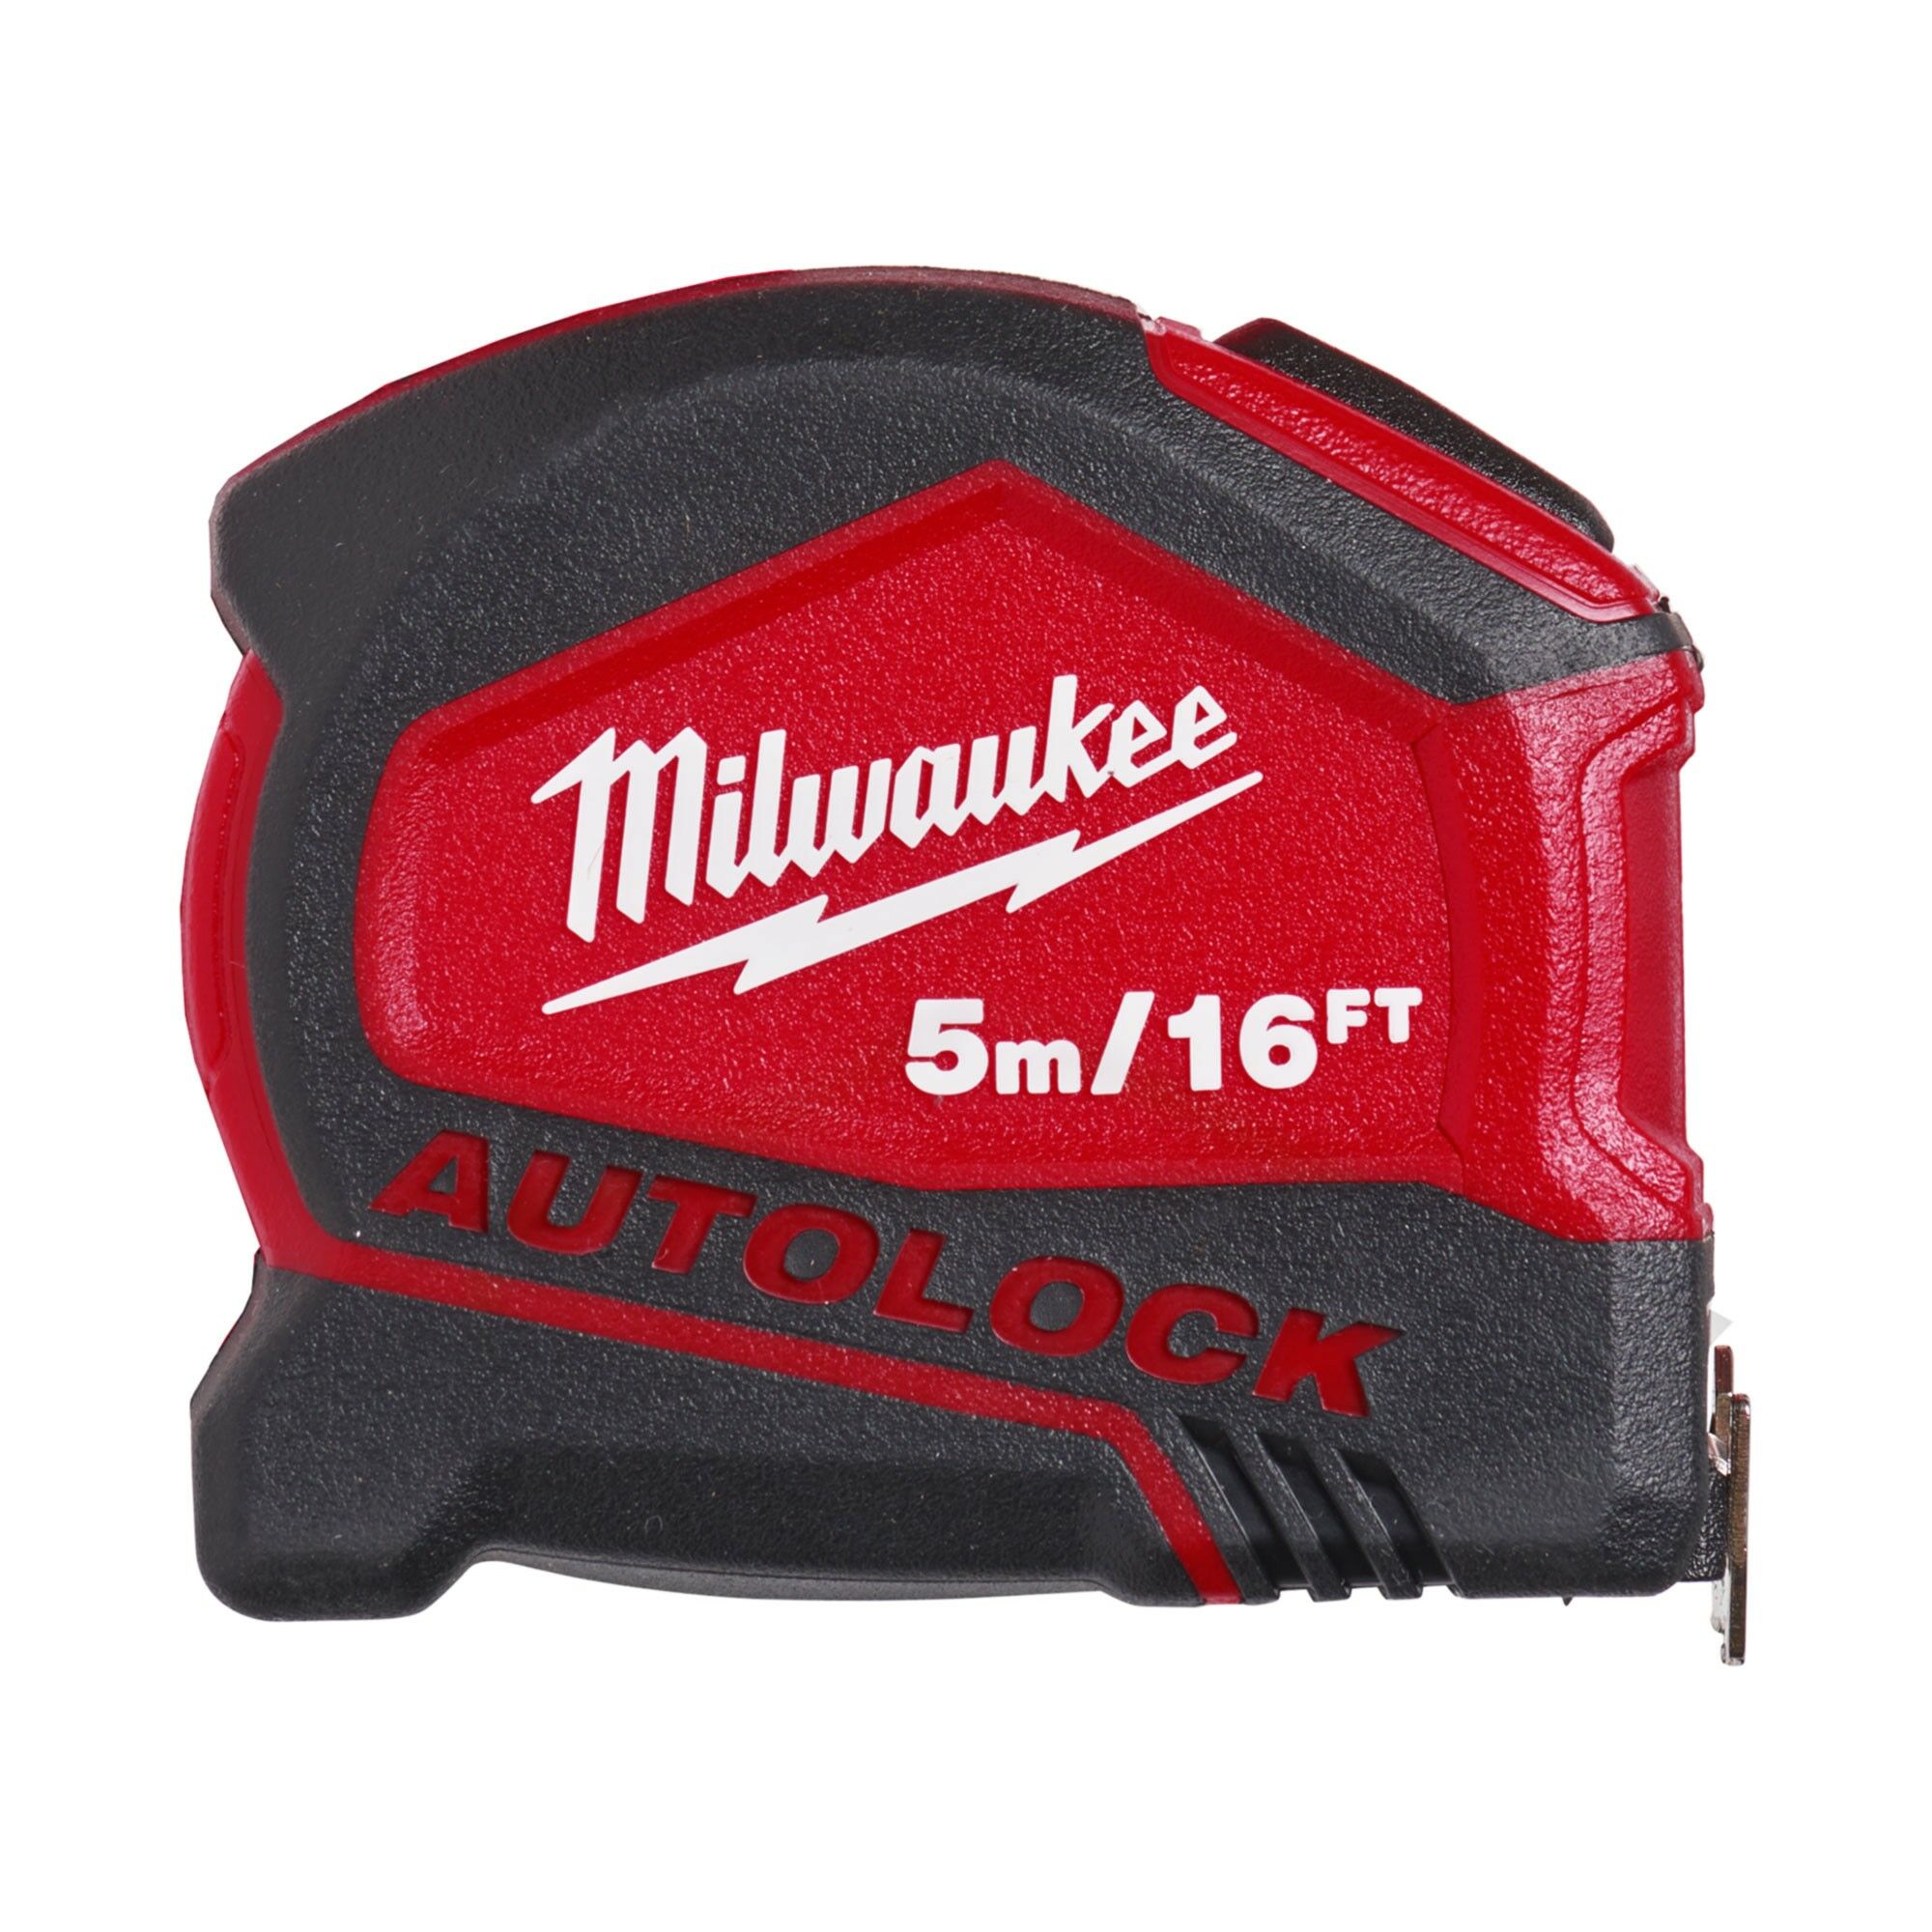 Milwaukee 4932464665 Autolock 5m/16ft Tape Measure